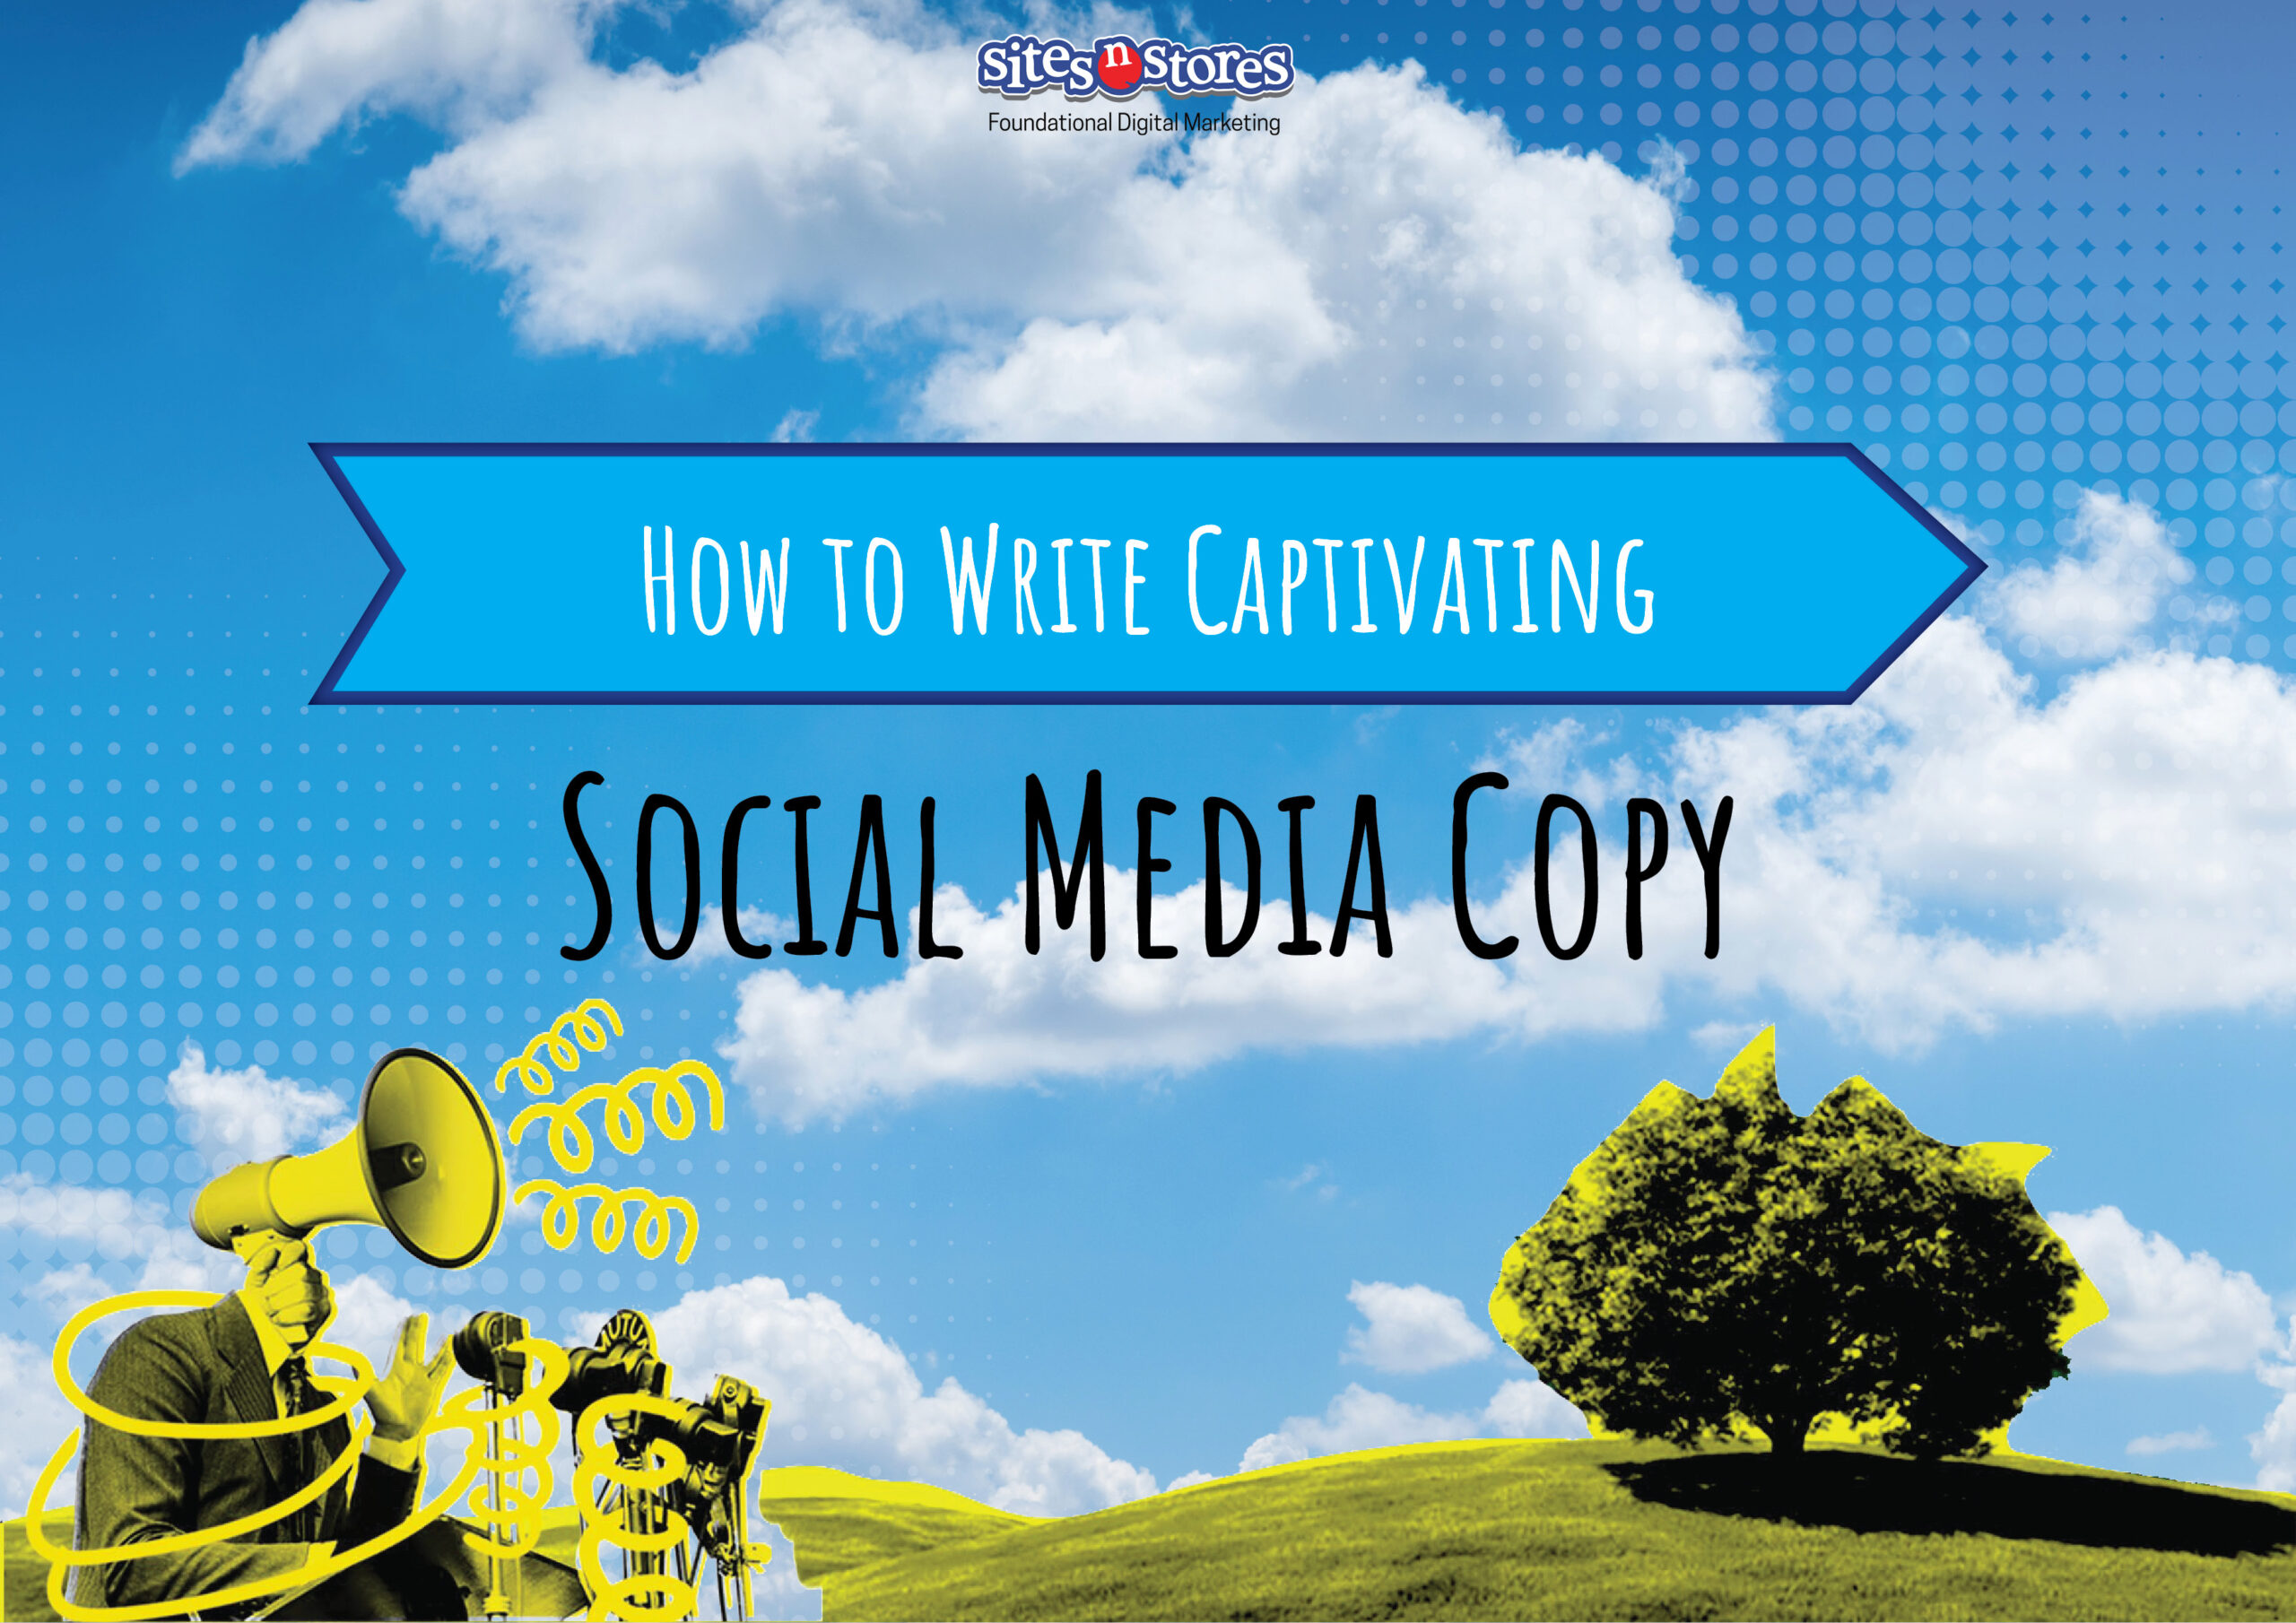 How to Write Captivating Social Media Copy